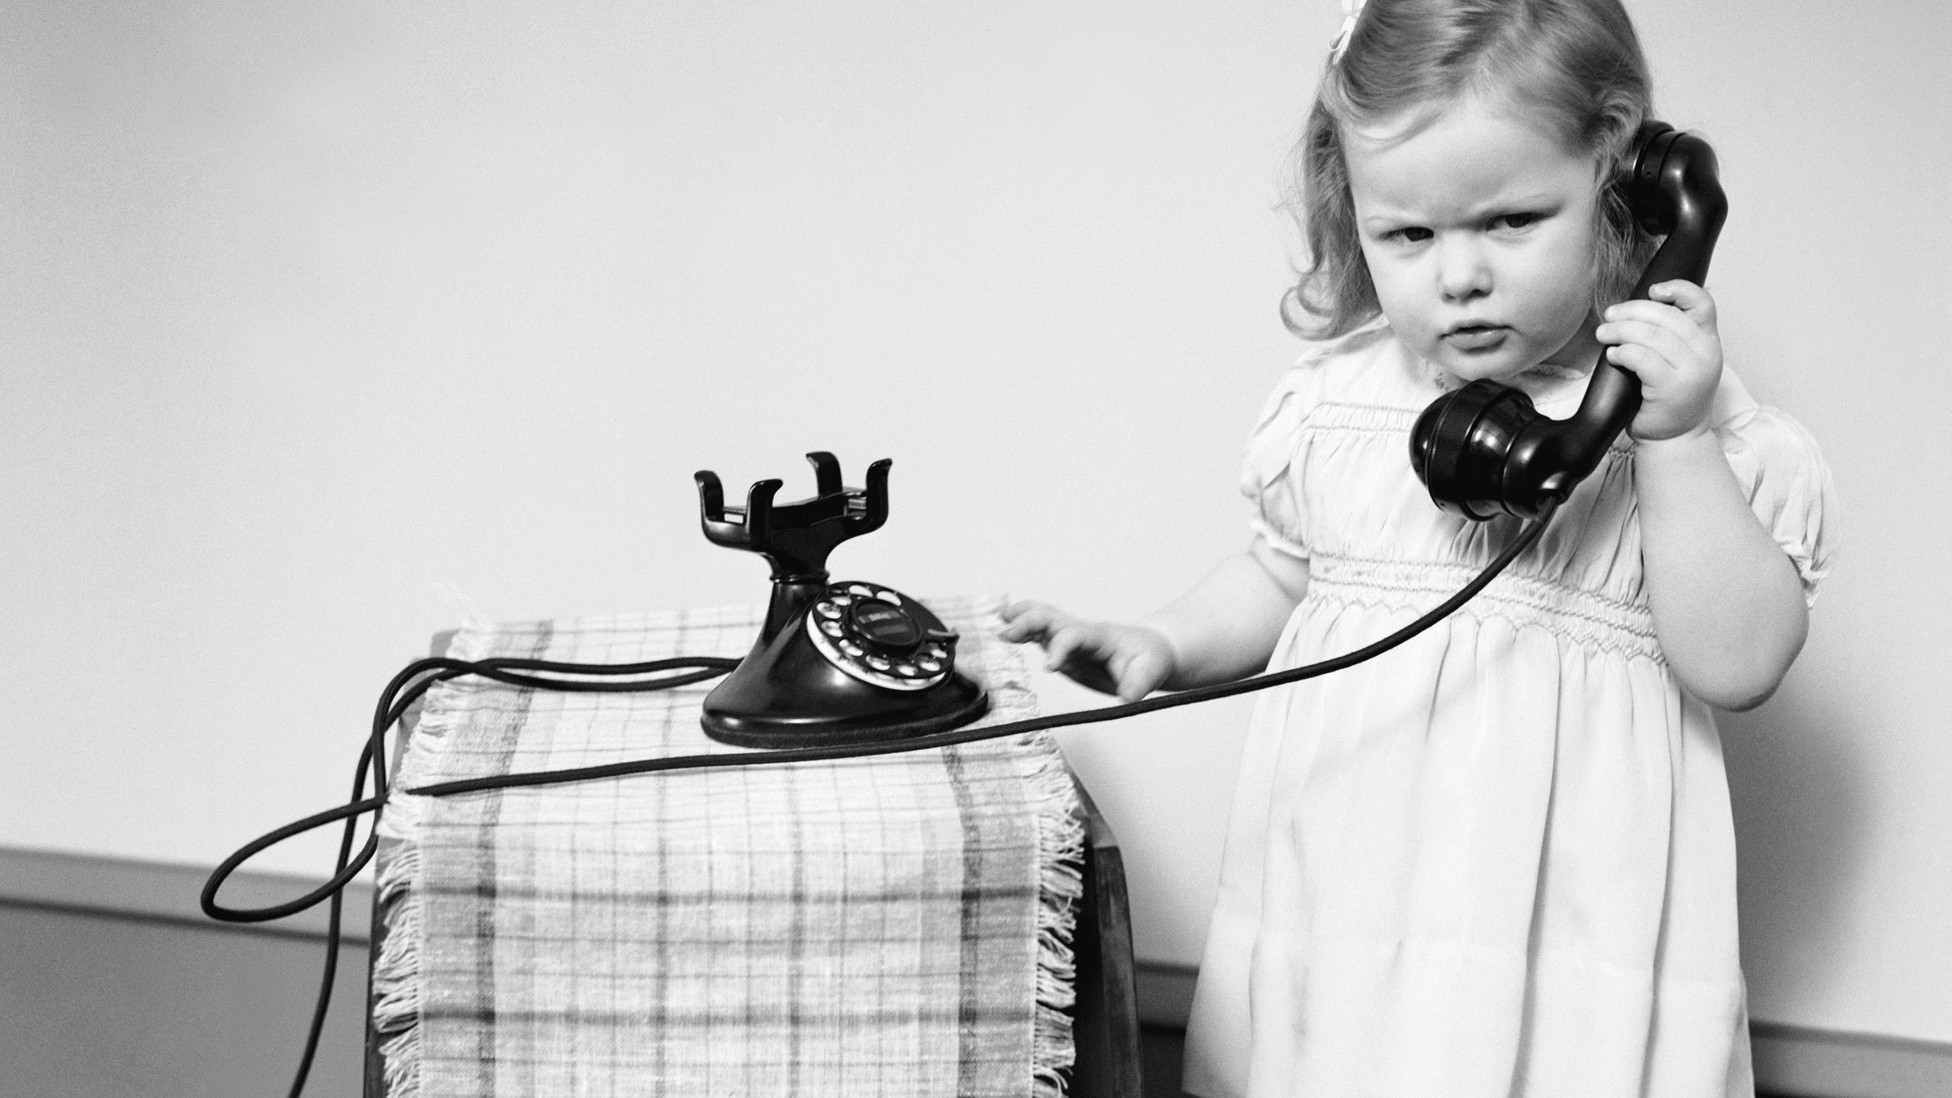 Разговор по телефону для ребенка. Ребенок с телефоном. Ребенок с телефонной трубкой. Девочка с телефонной трубкой. Девочка с телефоном.